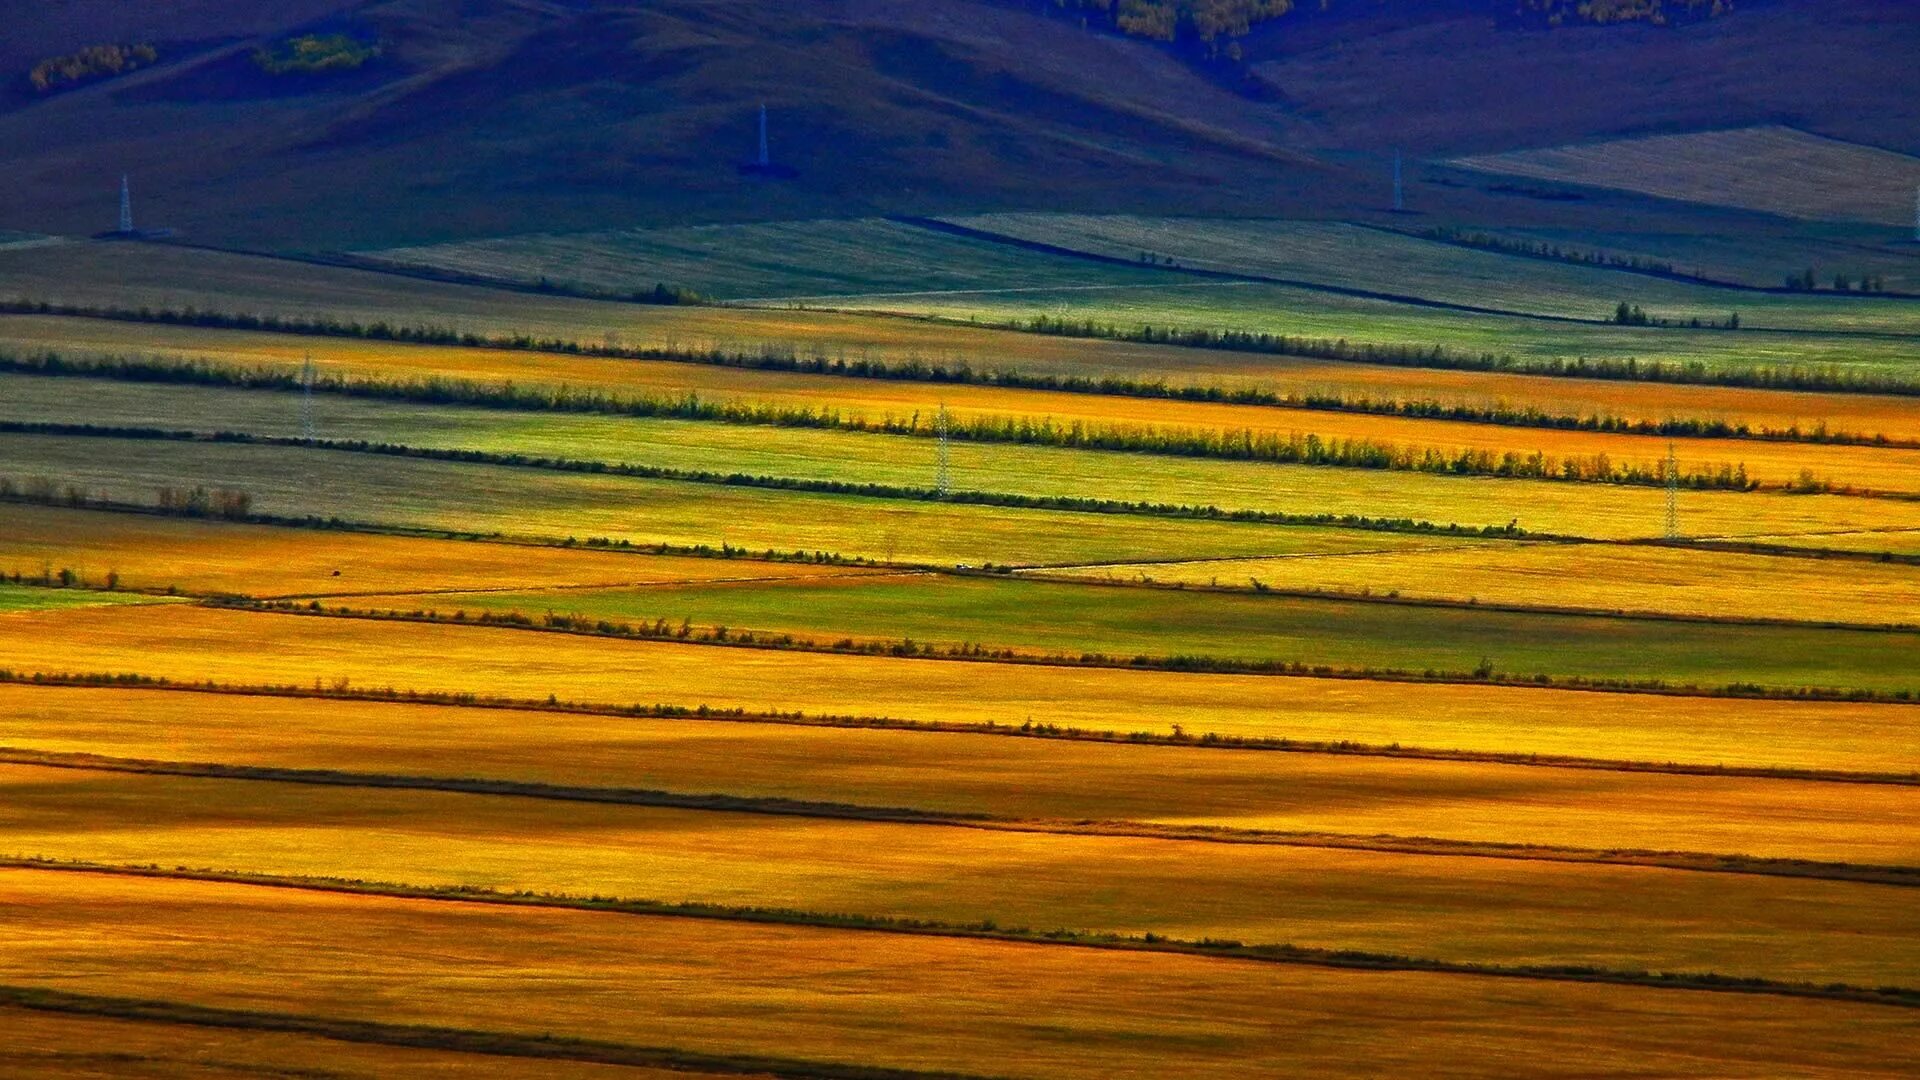 Www bing com image. Прерия Хулунбуир. Хулунбуирская степь КНР. Монголия пейзажи. Внутренняя Монголия.